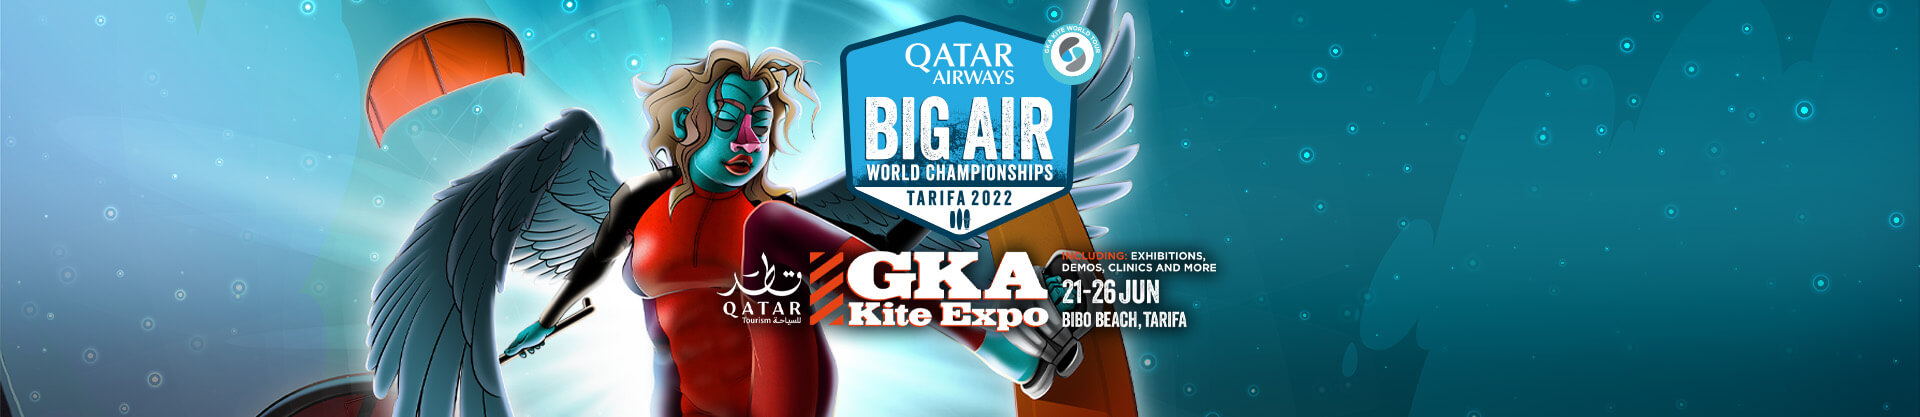 Image for GKA Big Air World Championships 2022